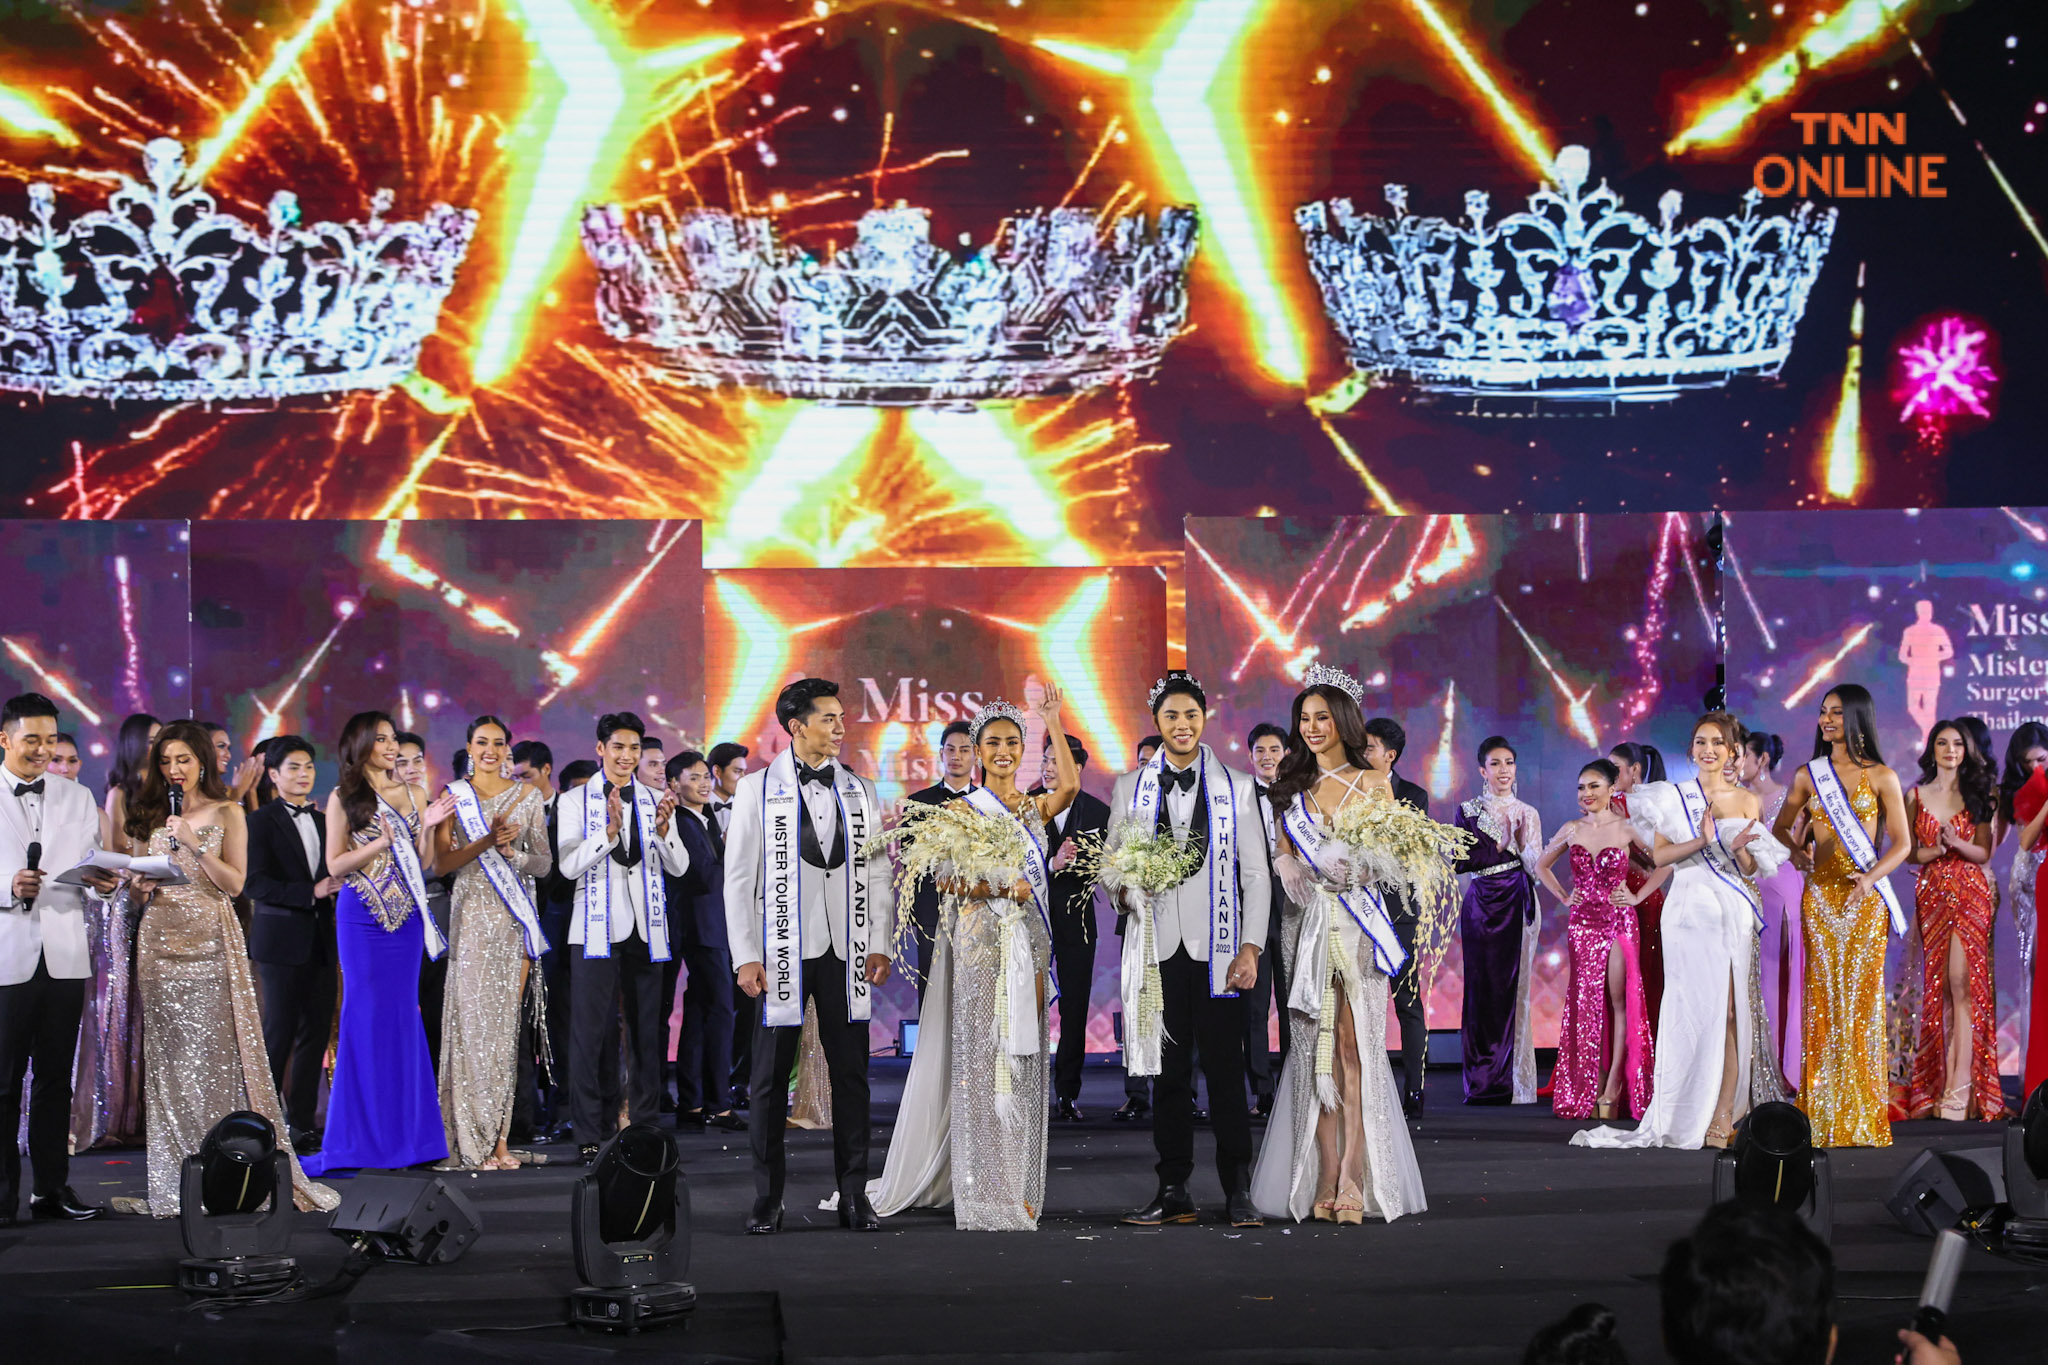 “น้ำเมย-เธียร์เตอร์-หมีพูห์” คว้ามงกุฎ Miss, Mister และ Miss Queen เวที Miss and Mister Surgery Thailand 2022 เตรียมประกวดเวทีระดับโลก “กิ๊-นิวัฒน์ นาคนวล” คว้า Mister Tourism World Thailand 2022 หนุ่มหล่อทูตการท่องเที่ยวไทย